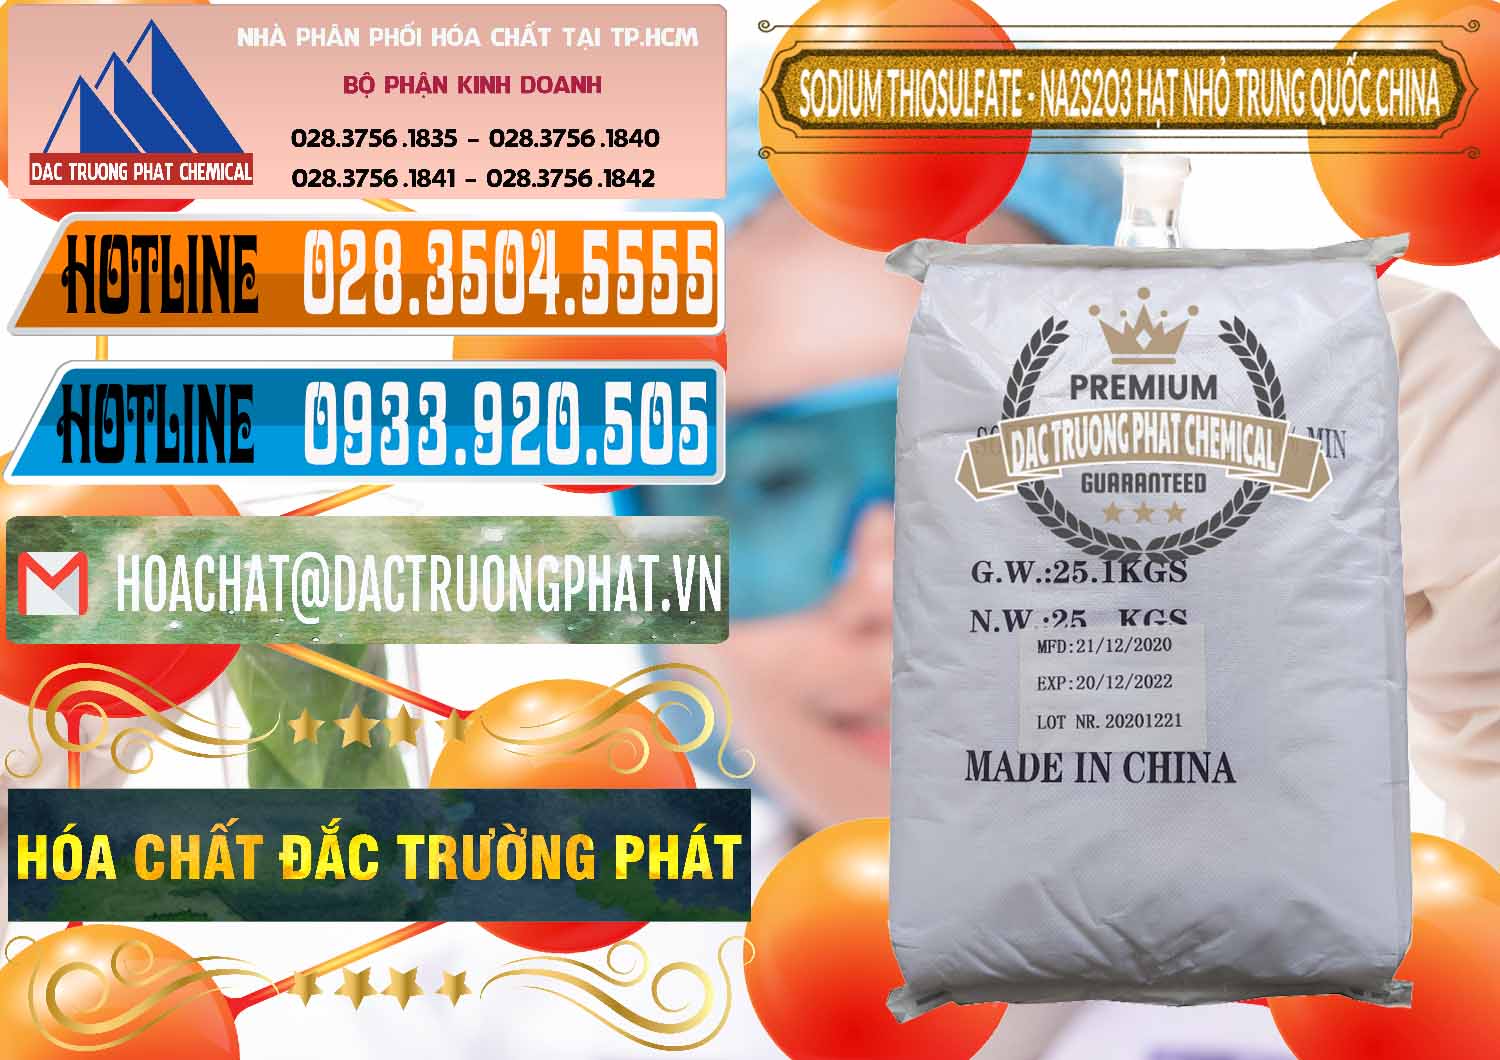 Nơi chuyên phân phối _ bán Sodium Thiosulfate - NA2S2O3 Hạt Nhỏ Trung Quốc China - 0204 - Công ty chuyên cung cấp ( kinh doanh ) hóa chất tại TP.HCM - stmp.net